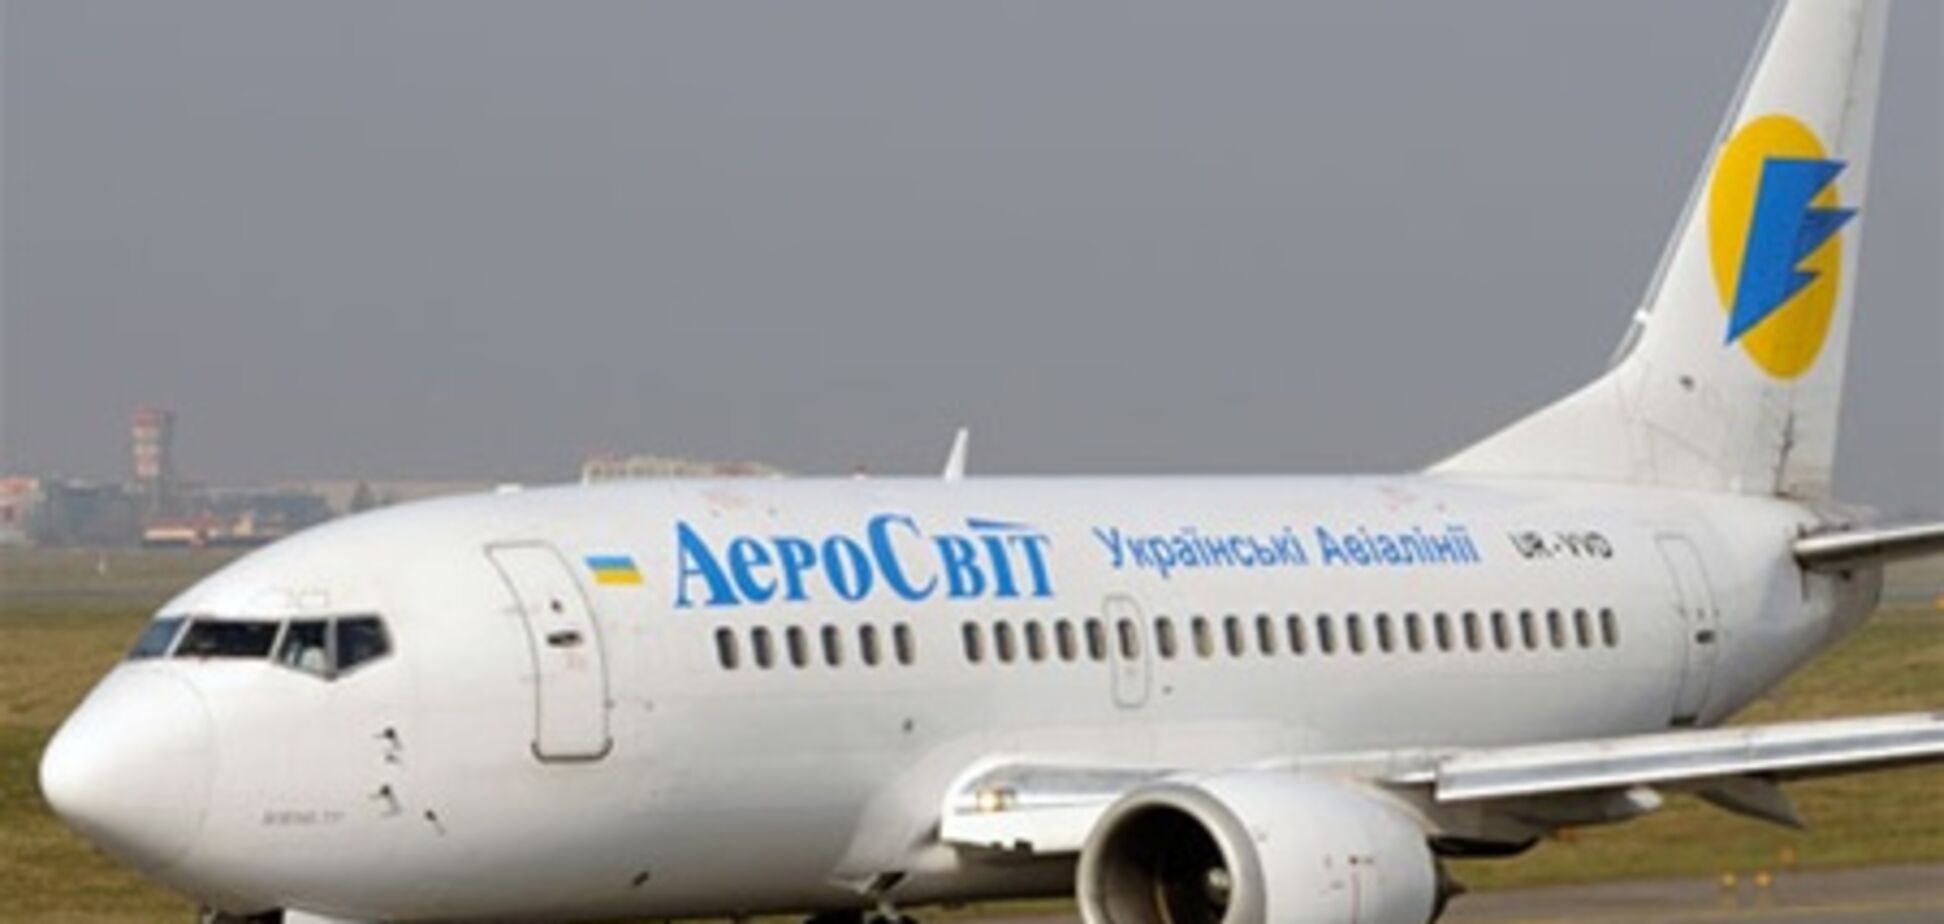 Украинский авиаперевозчик ввел плату за полет в одиночестве